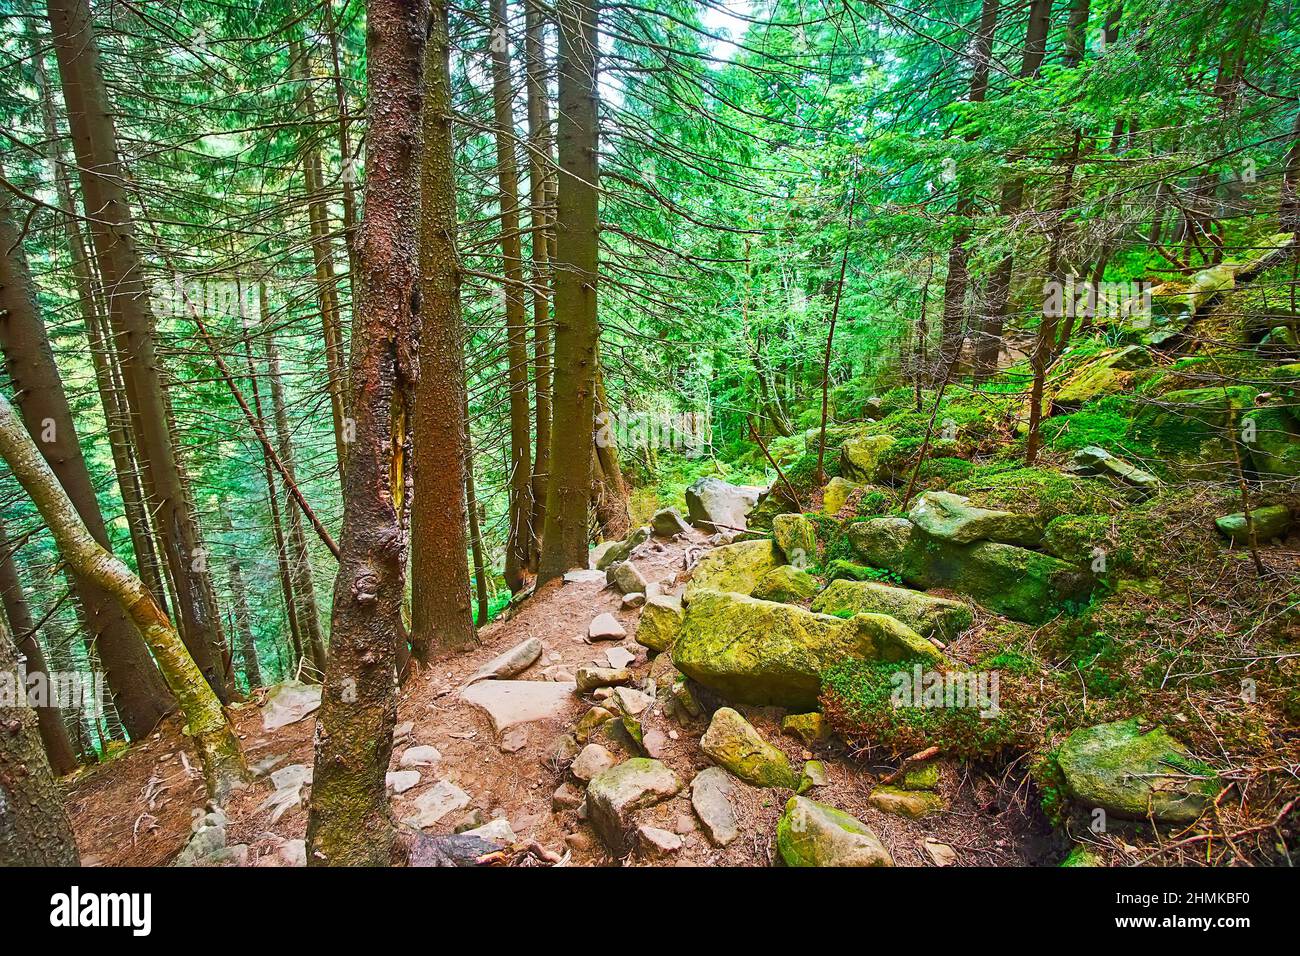 Le talus crie pente, couverte de mousse verte et de grande forêt de mélèze ombragée, Dzembronia, Carpates montagnes, Ukraine Banque D'Images